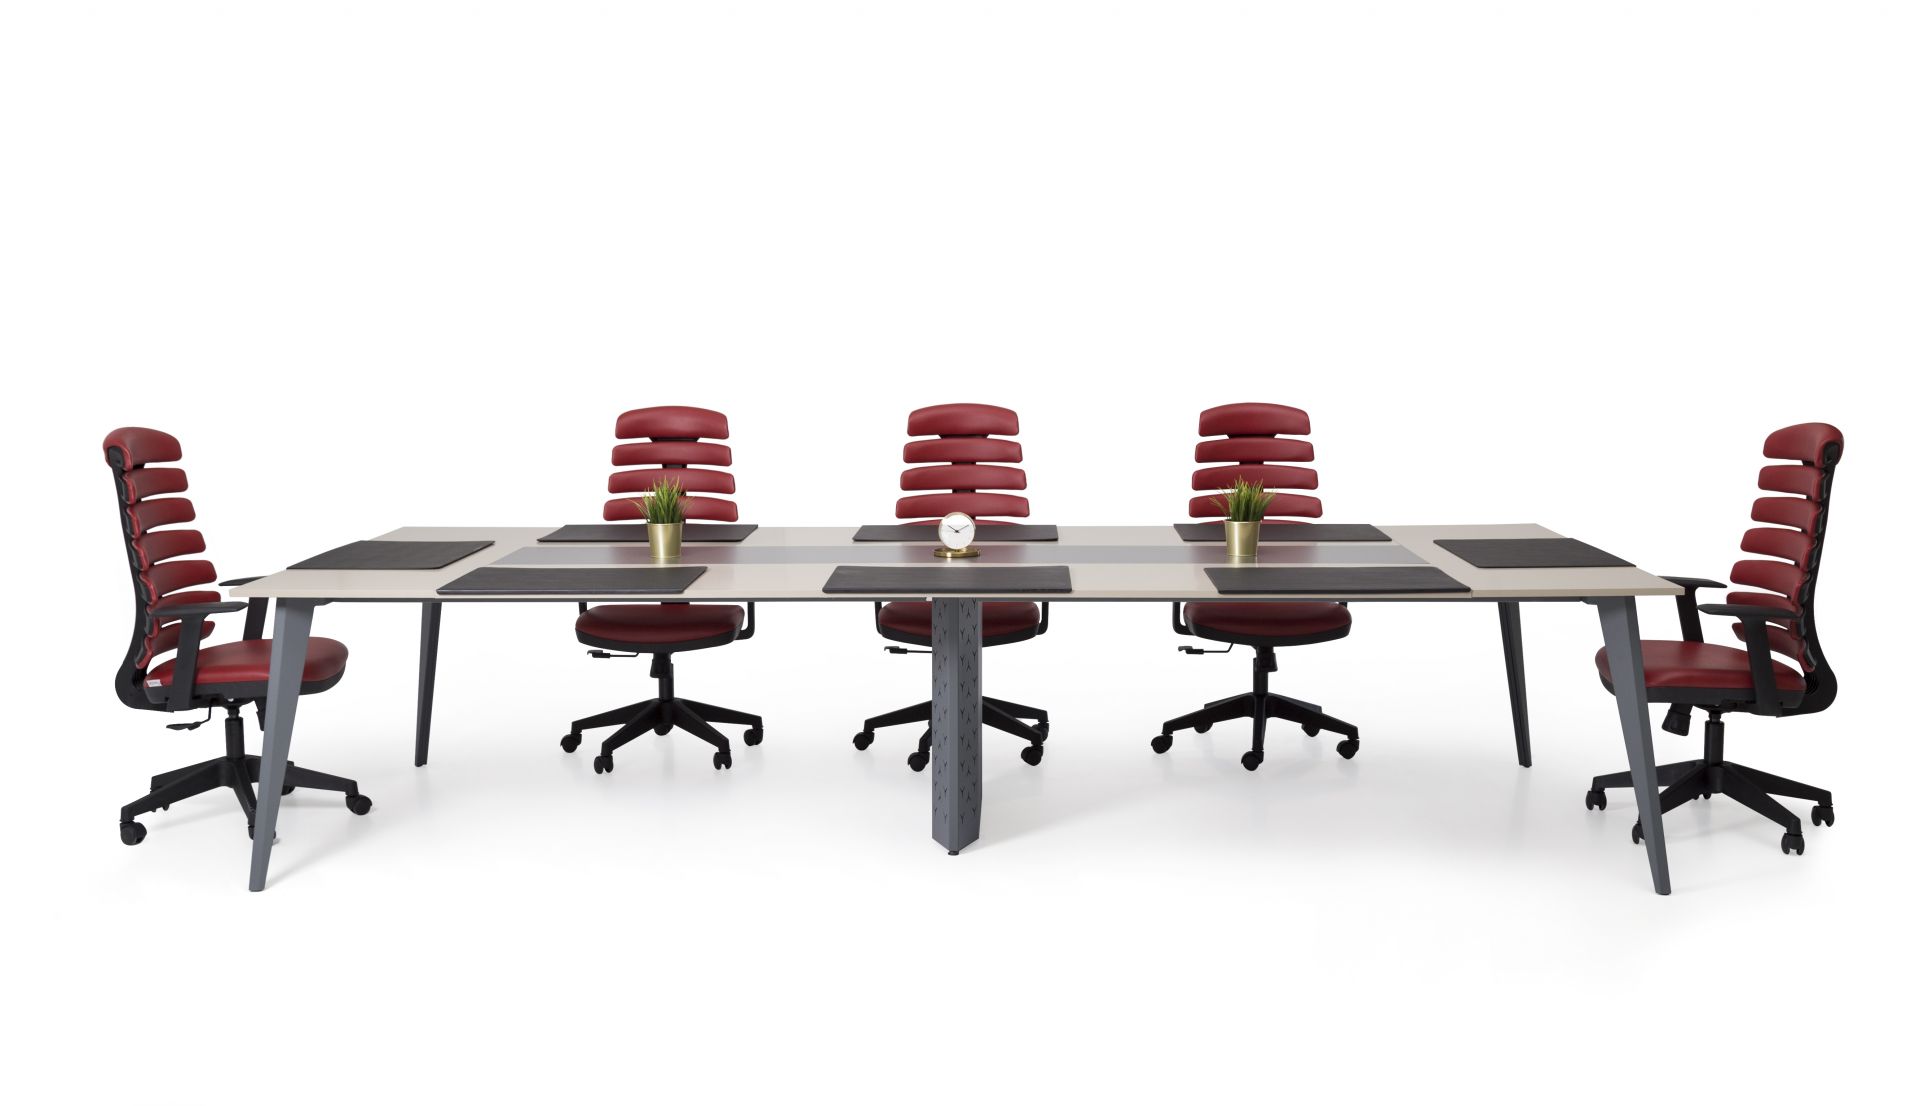 EASY Konferenztisch Bootsform 200x100 cm Nussbaum Besprechungstisch Tisch 